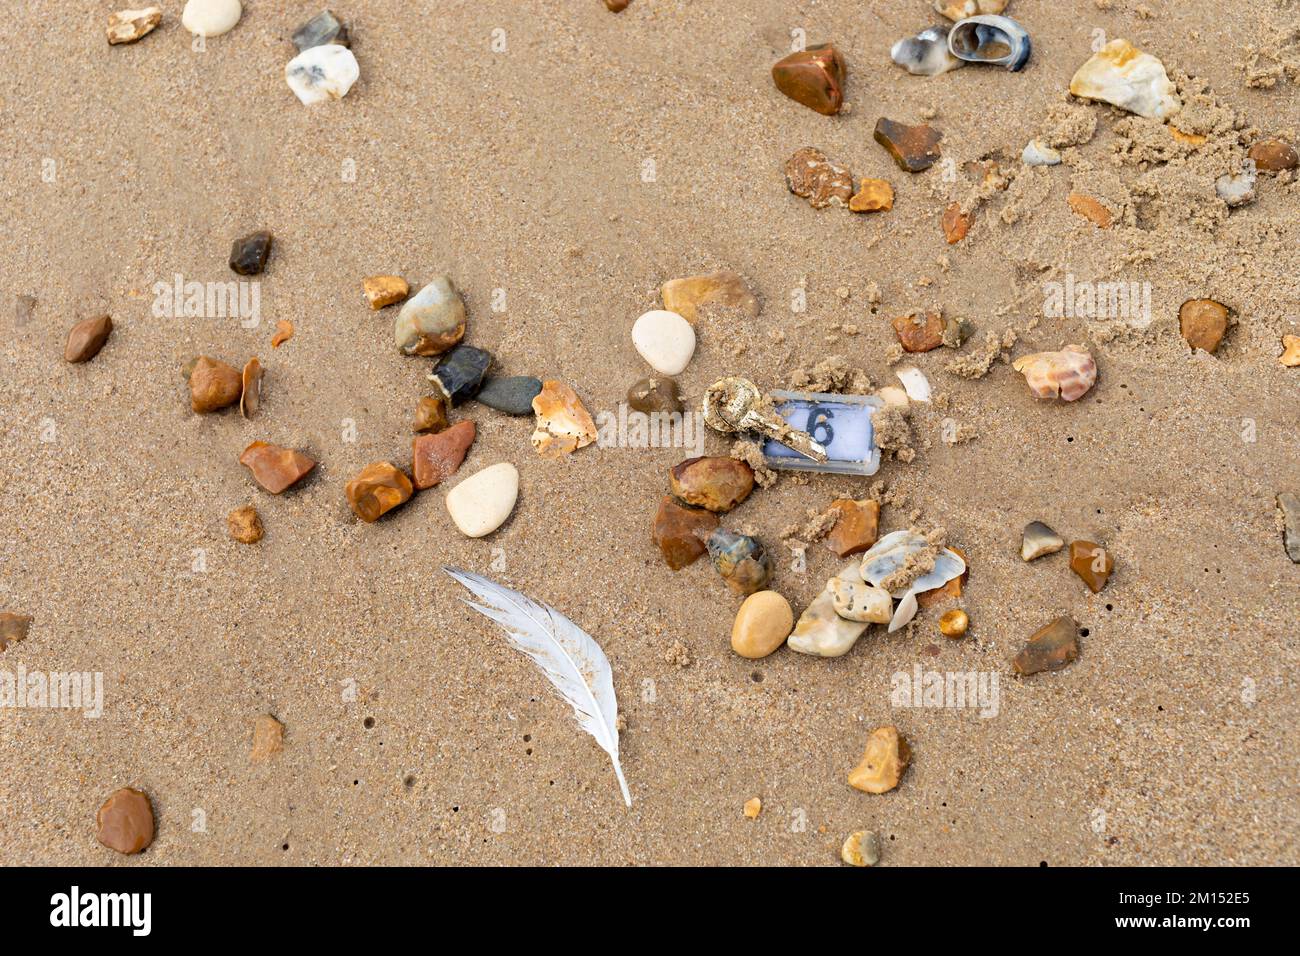 Una chiave smarrita su una spiaggia sabbiosa con pietre, conchiglie e una piuma di gabbiano. Bournemouth, Inghilterra, Regno Unito. Foto Stock